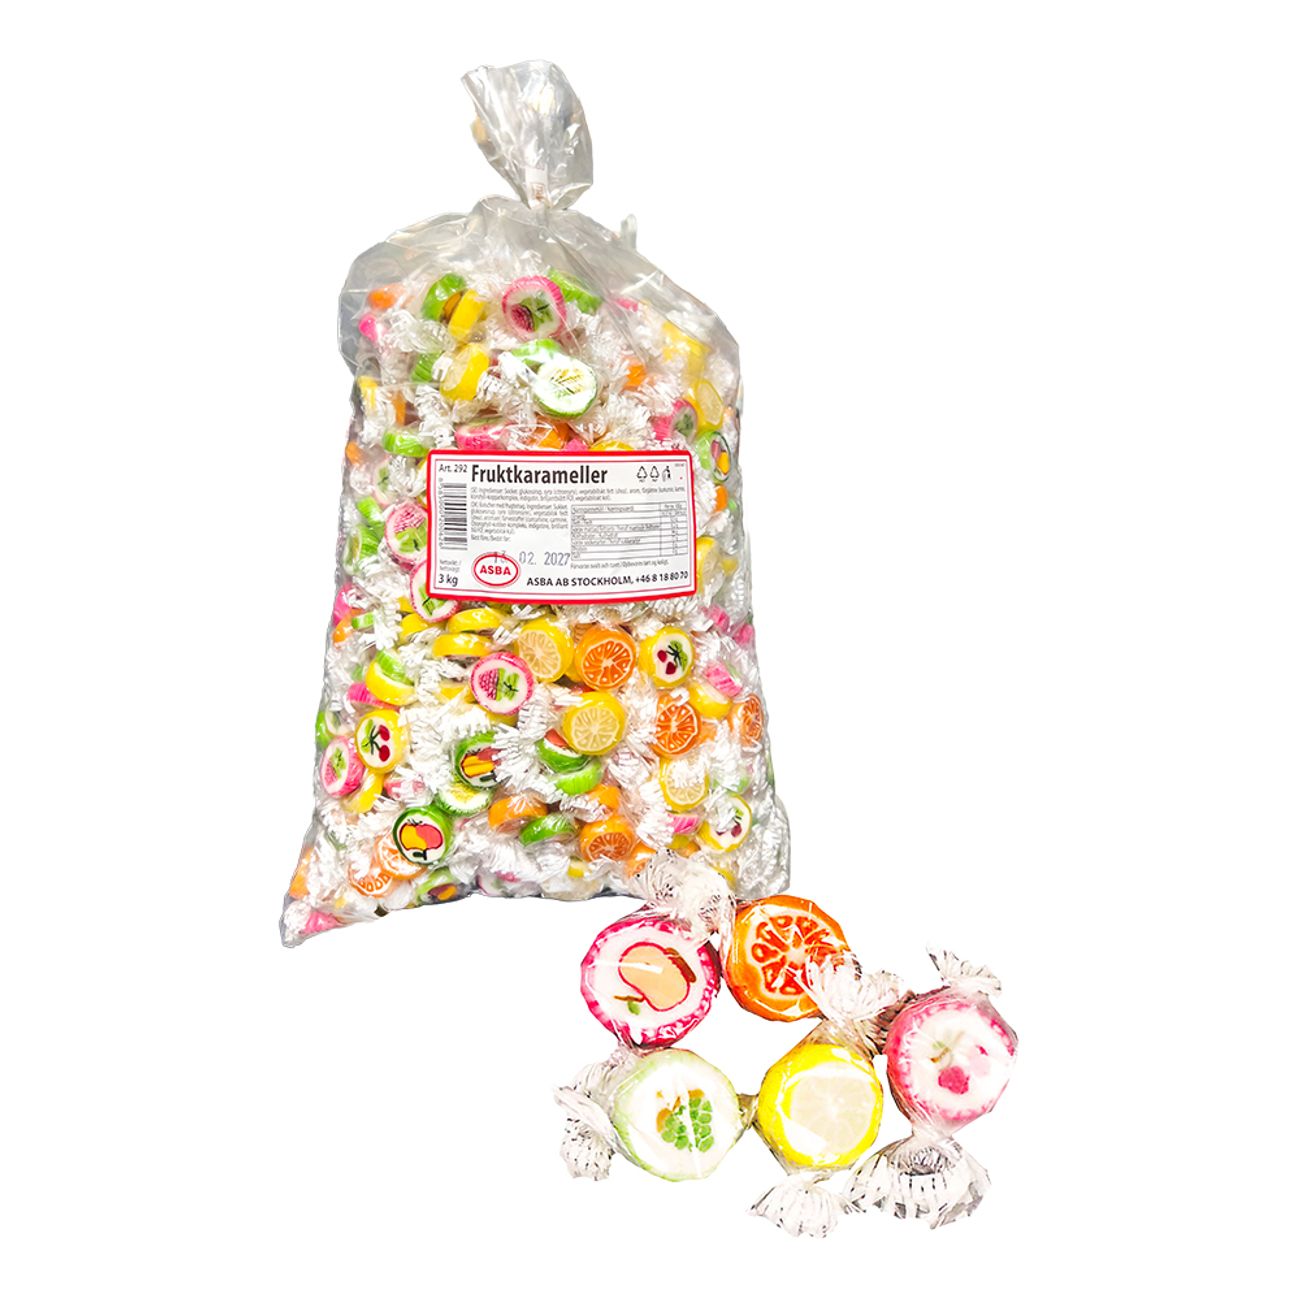 fruktkarameller-storpack-92046-2